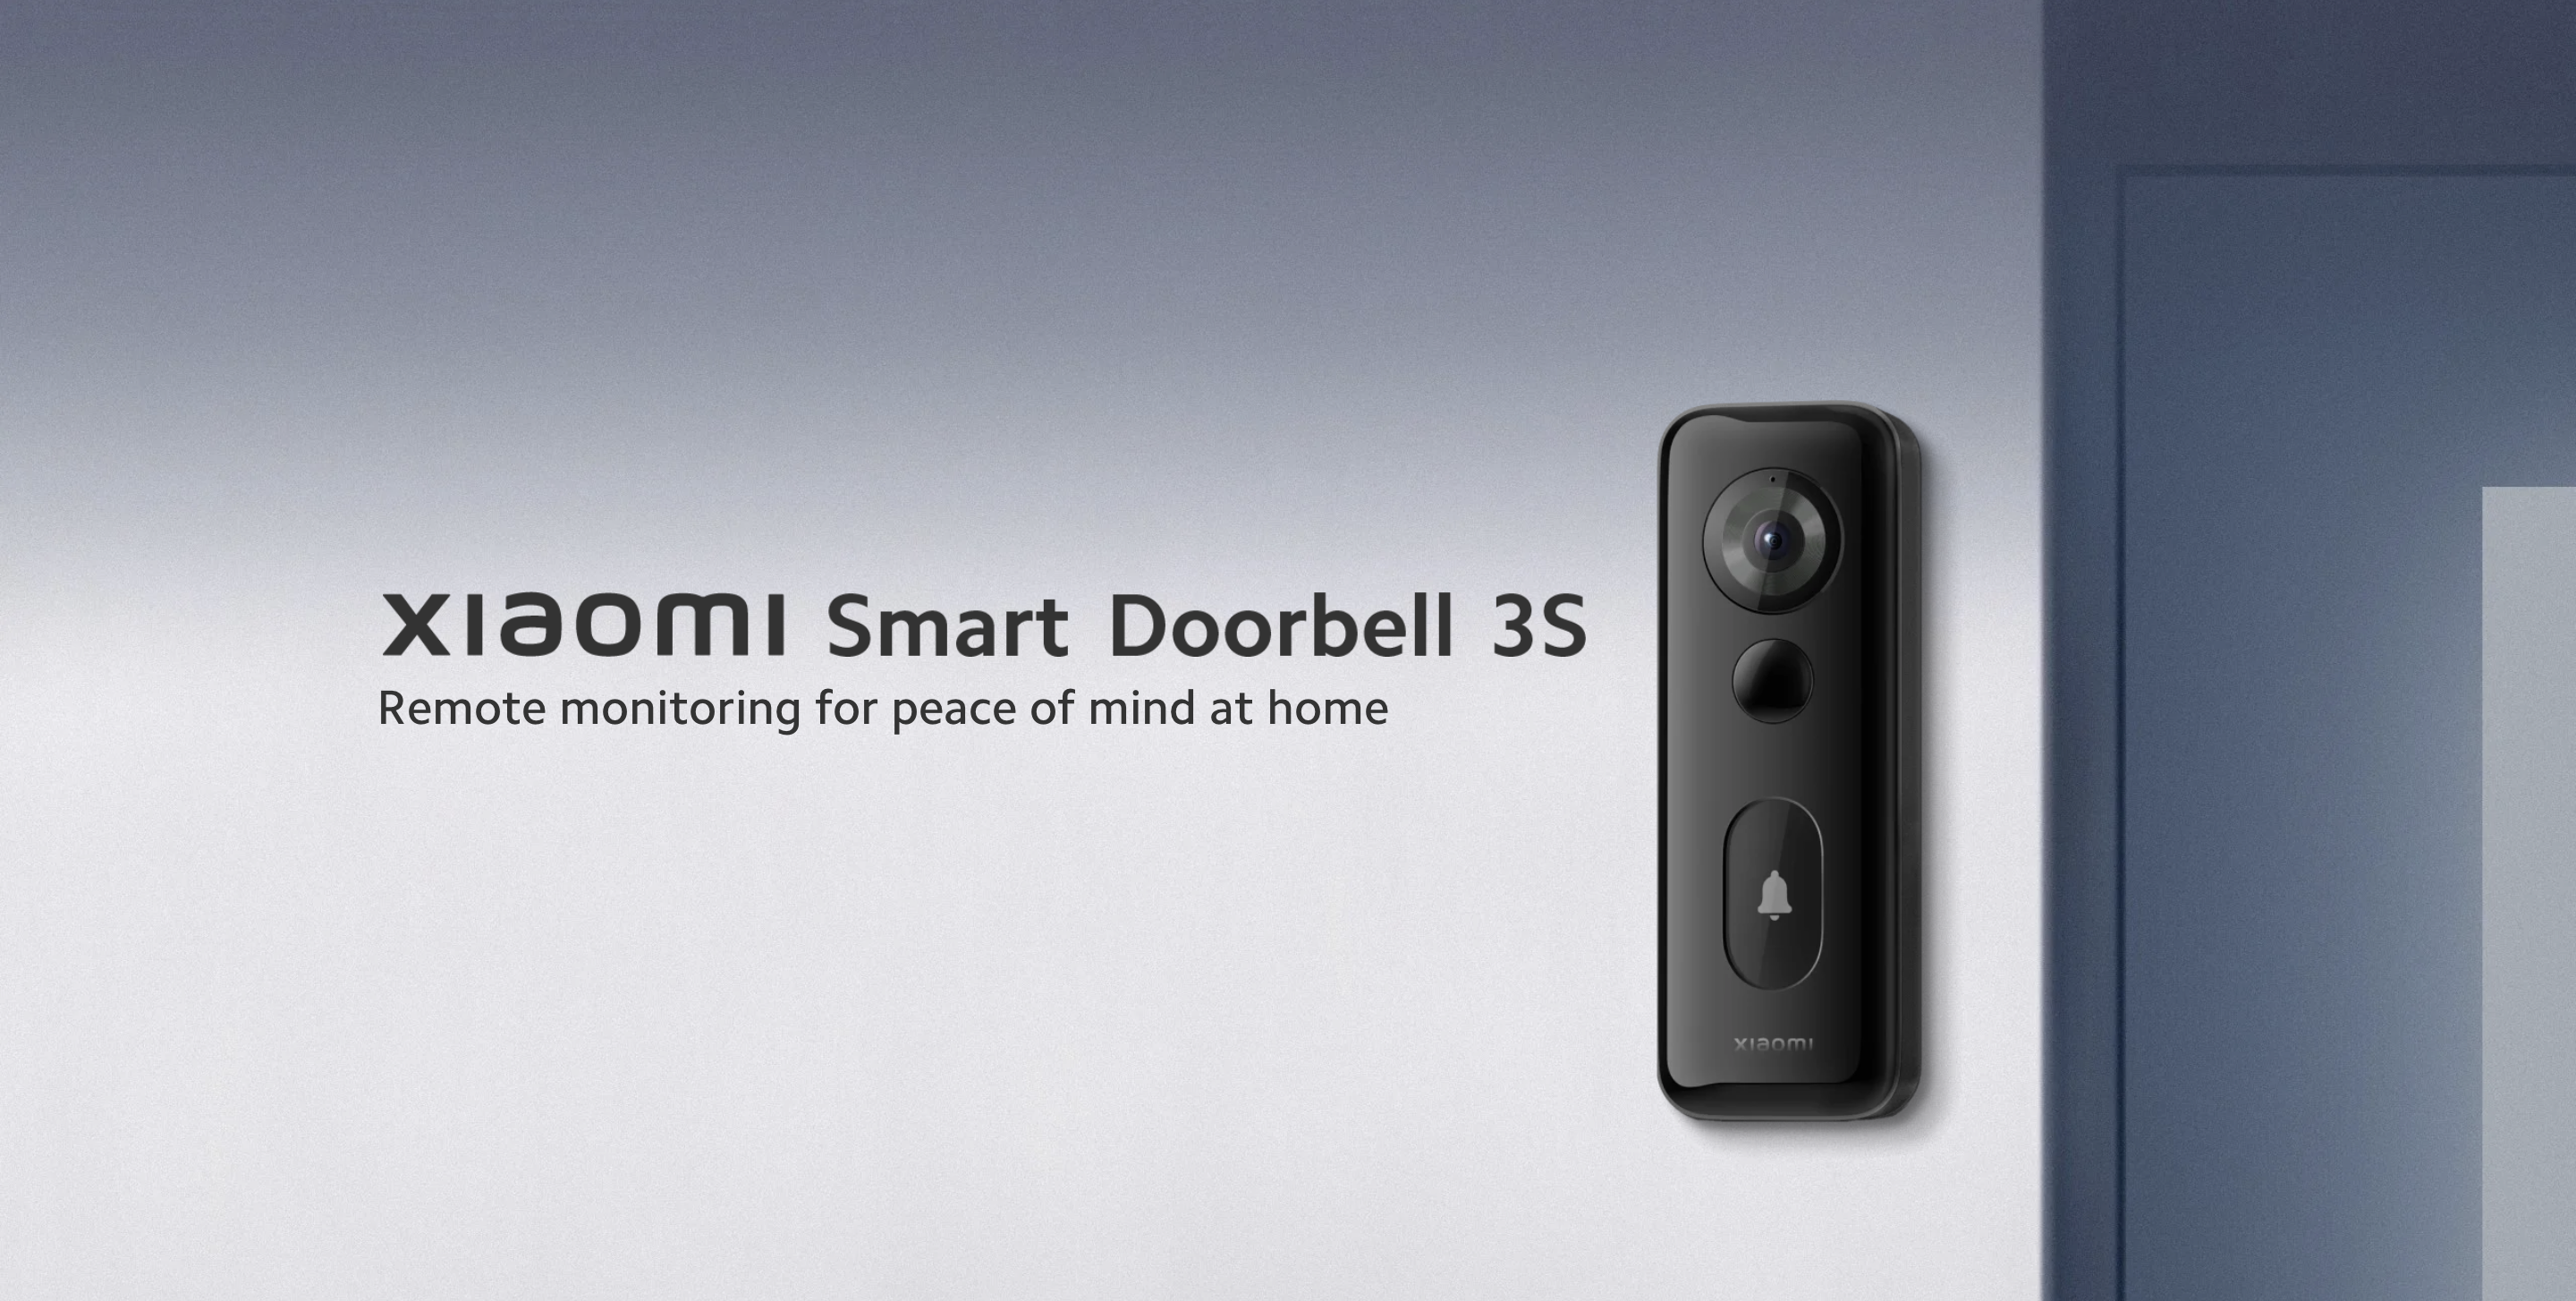 Xiaomi Smart Doorbell 3S con soporte Wi-Fi 6, cámara integrada y protección IP65 ha hecho su debut en el mercado mundial